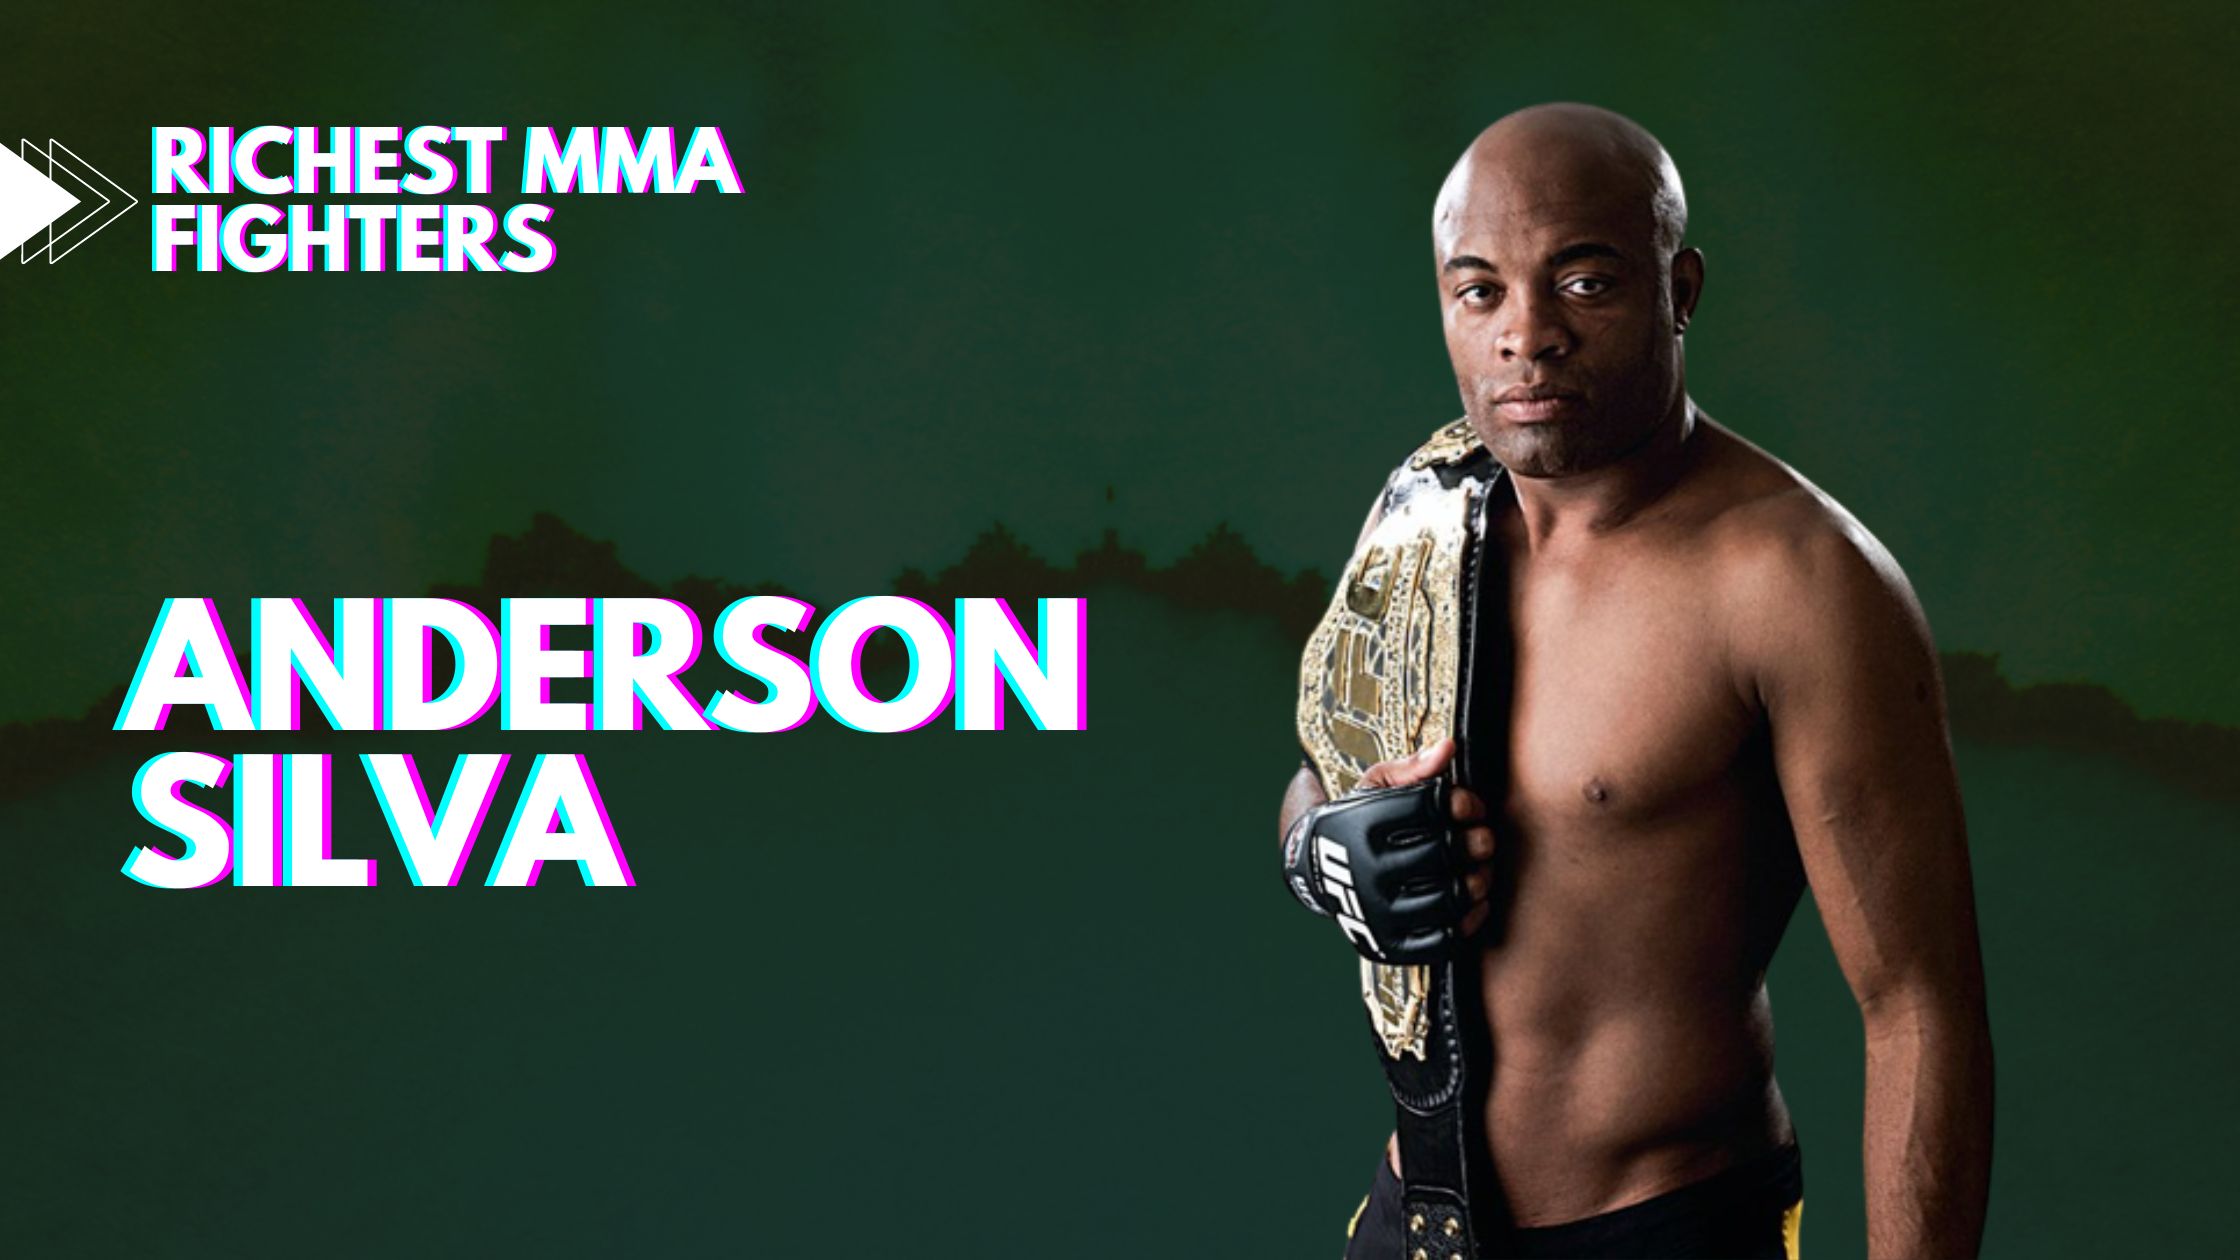 Anderson Silva - Richest MMA fighters